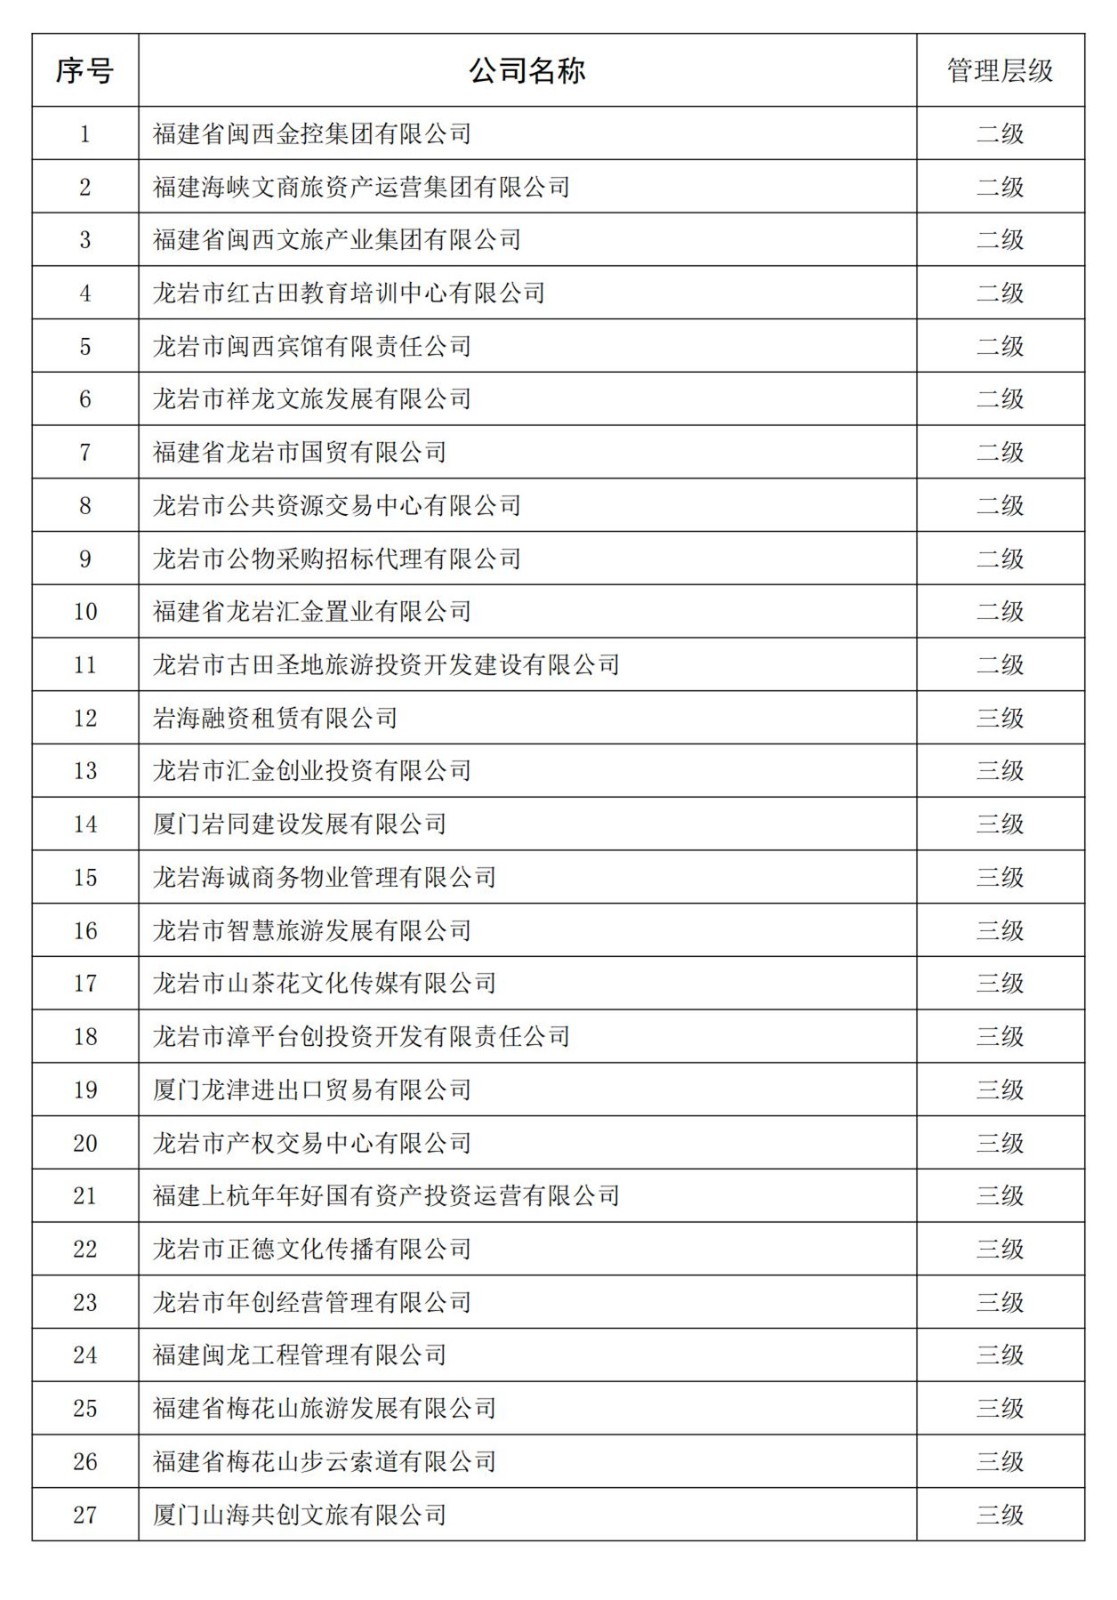 168体育(中国)官方网站全级次企业名单_00(1)_副本.jpg